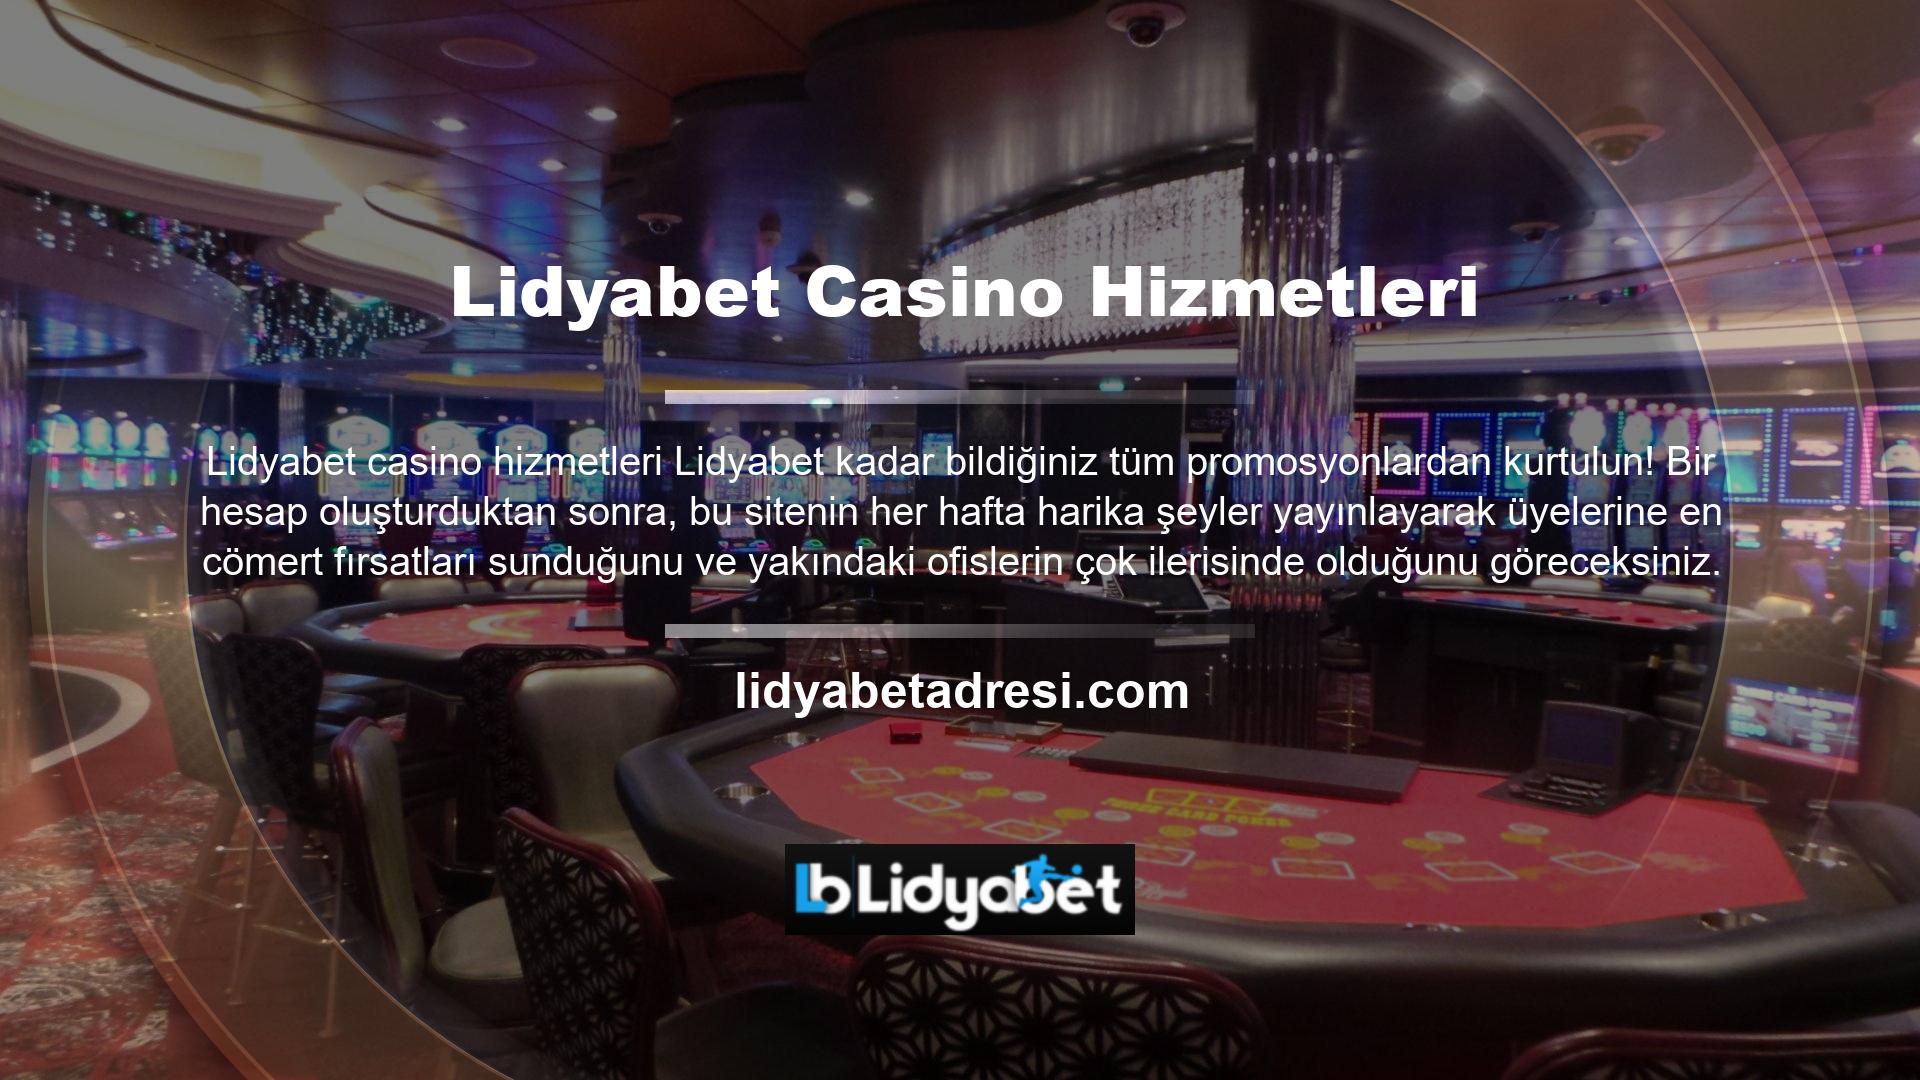 Birçok casino oyununda yüksek puan alan bisiklet kategorisi, Lidyabet ayrıca sürekli casino hizmetleri sunmaktadır